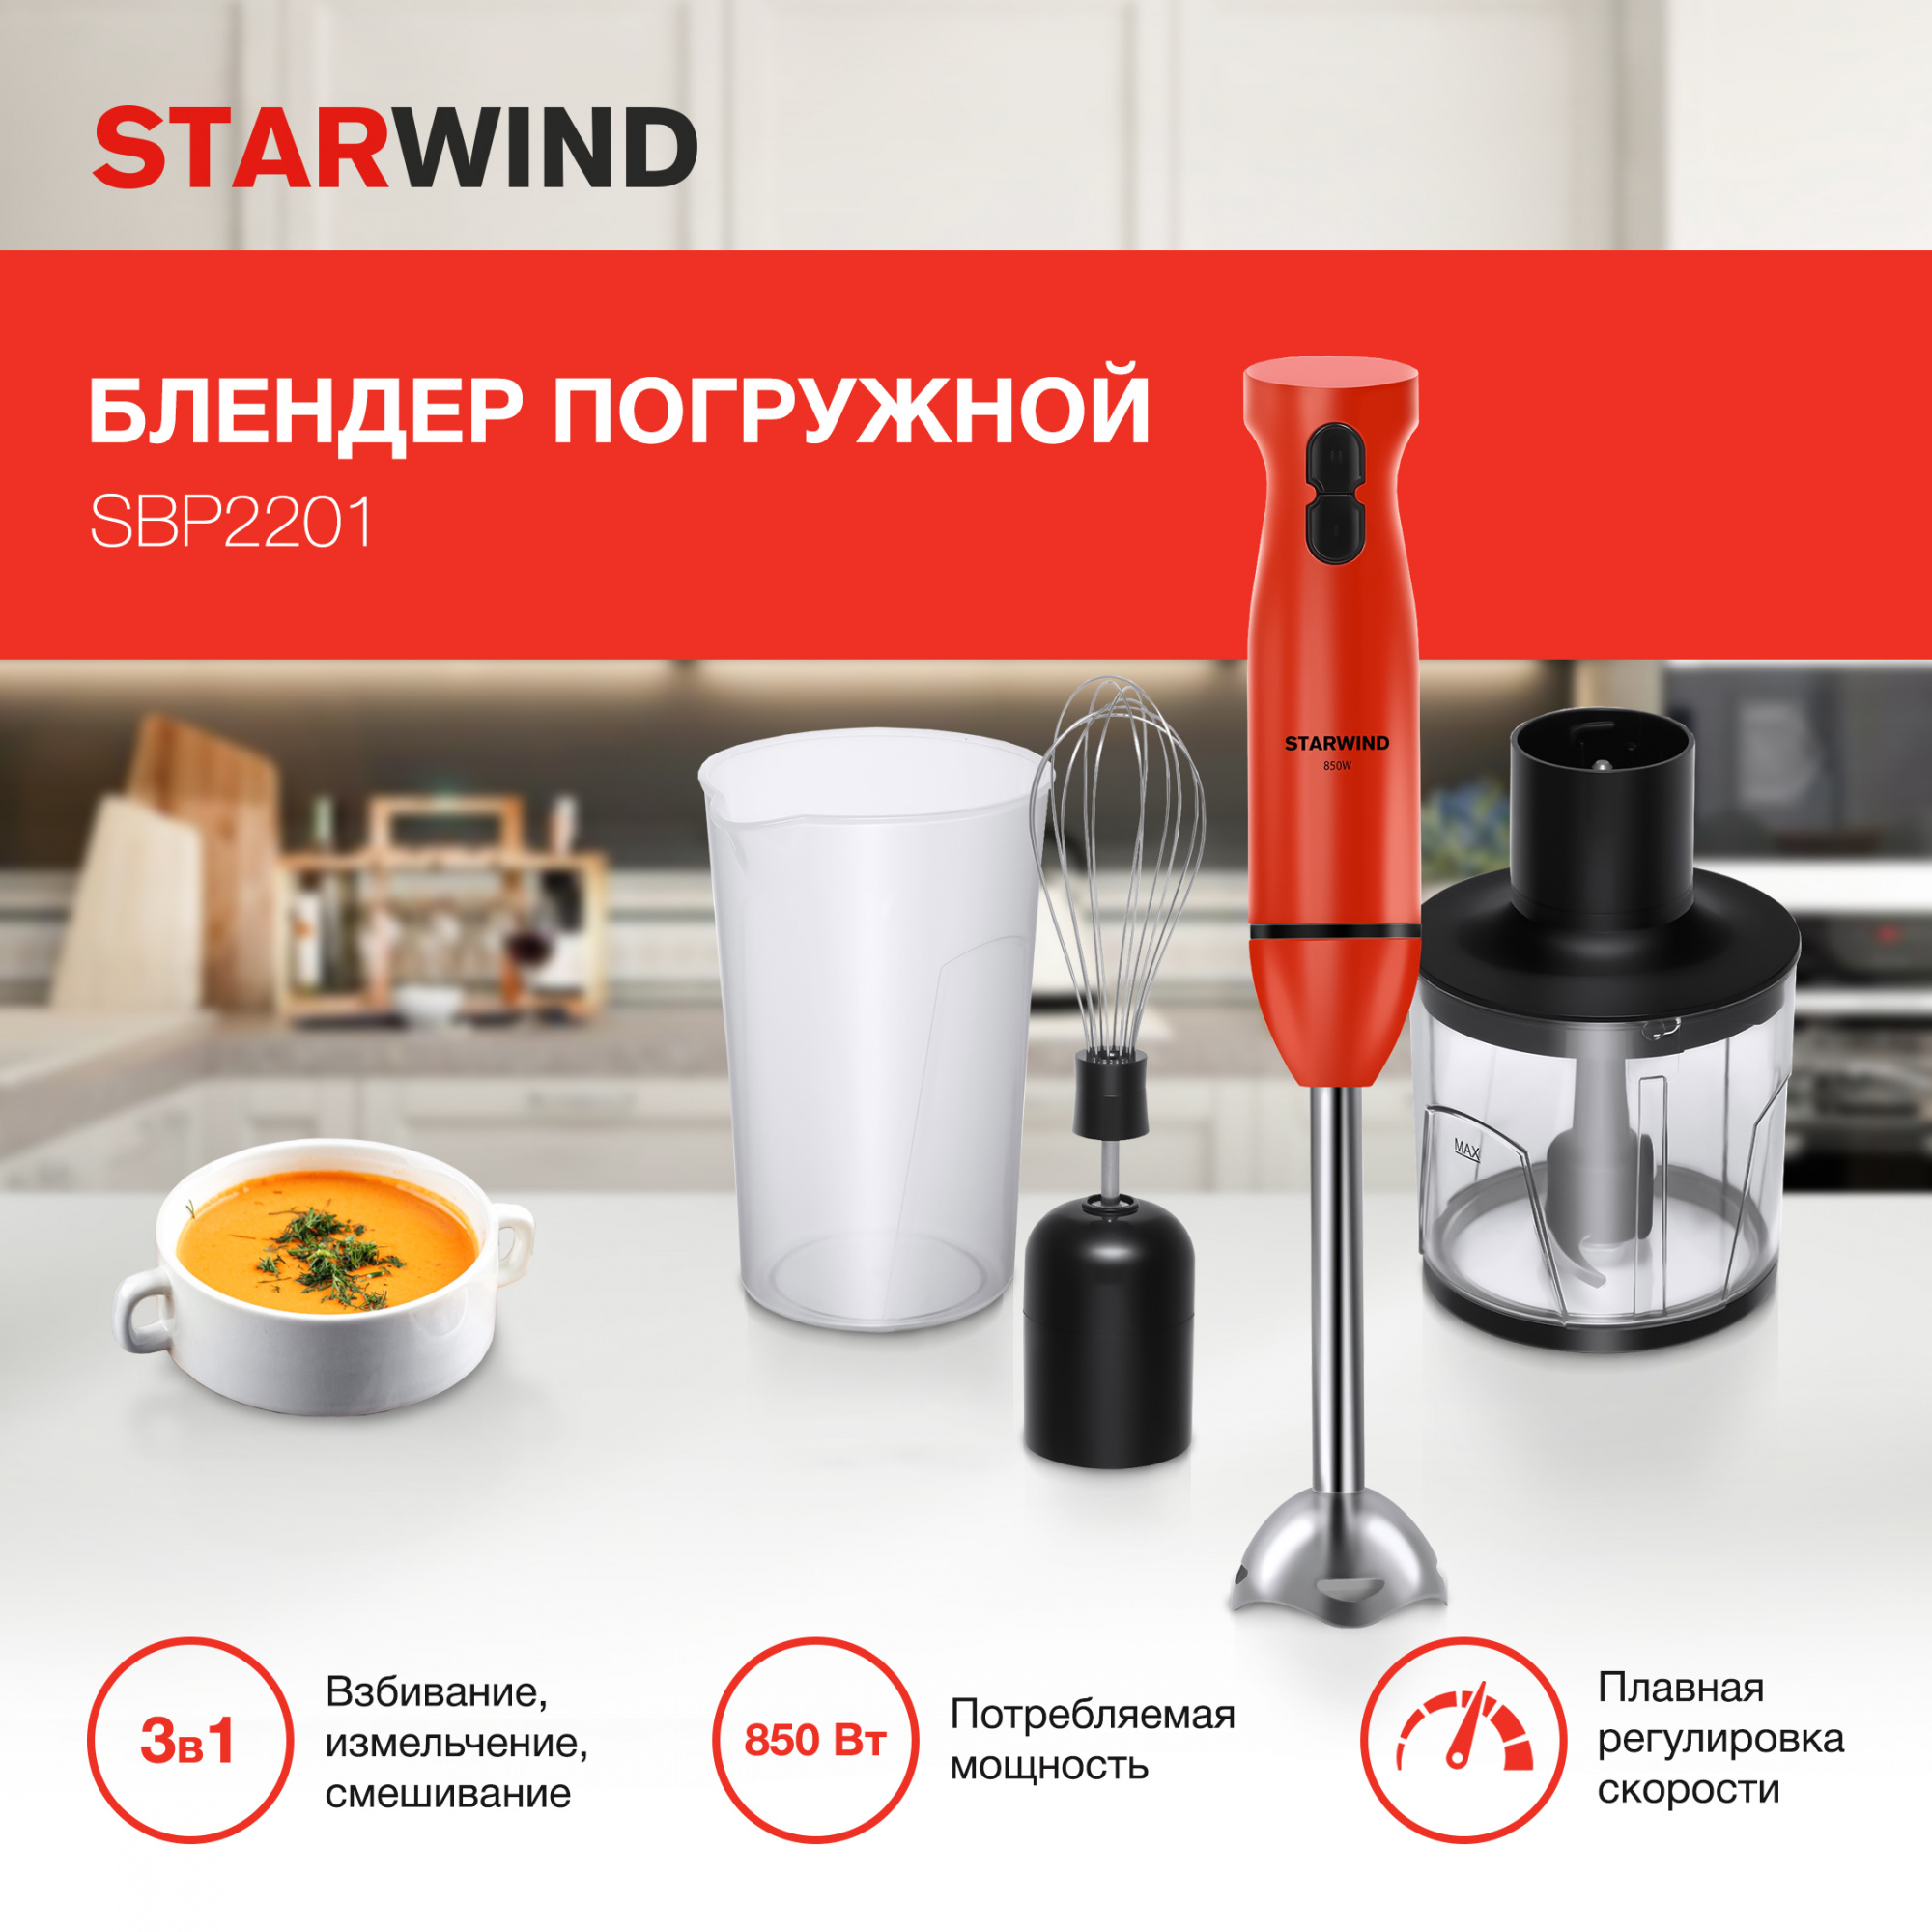 Блендер погружной Starwind SBP2201 красный/черный от магазина Старвинд